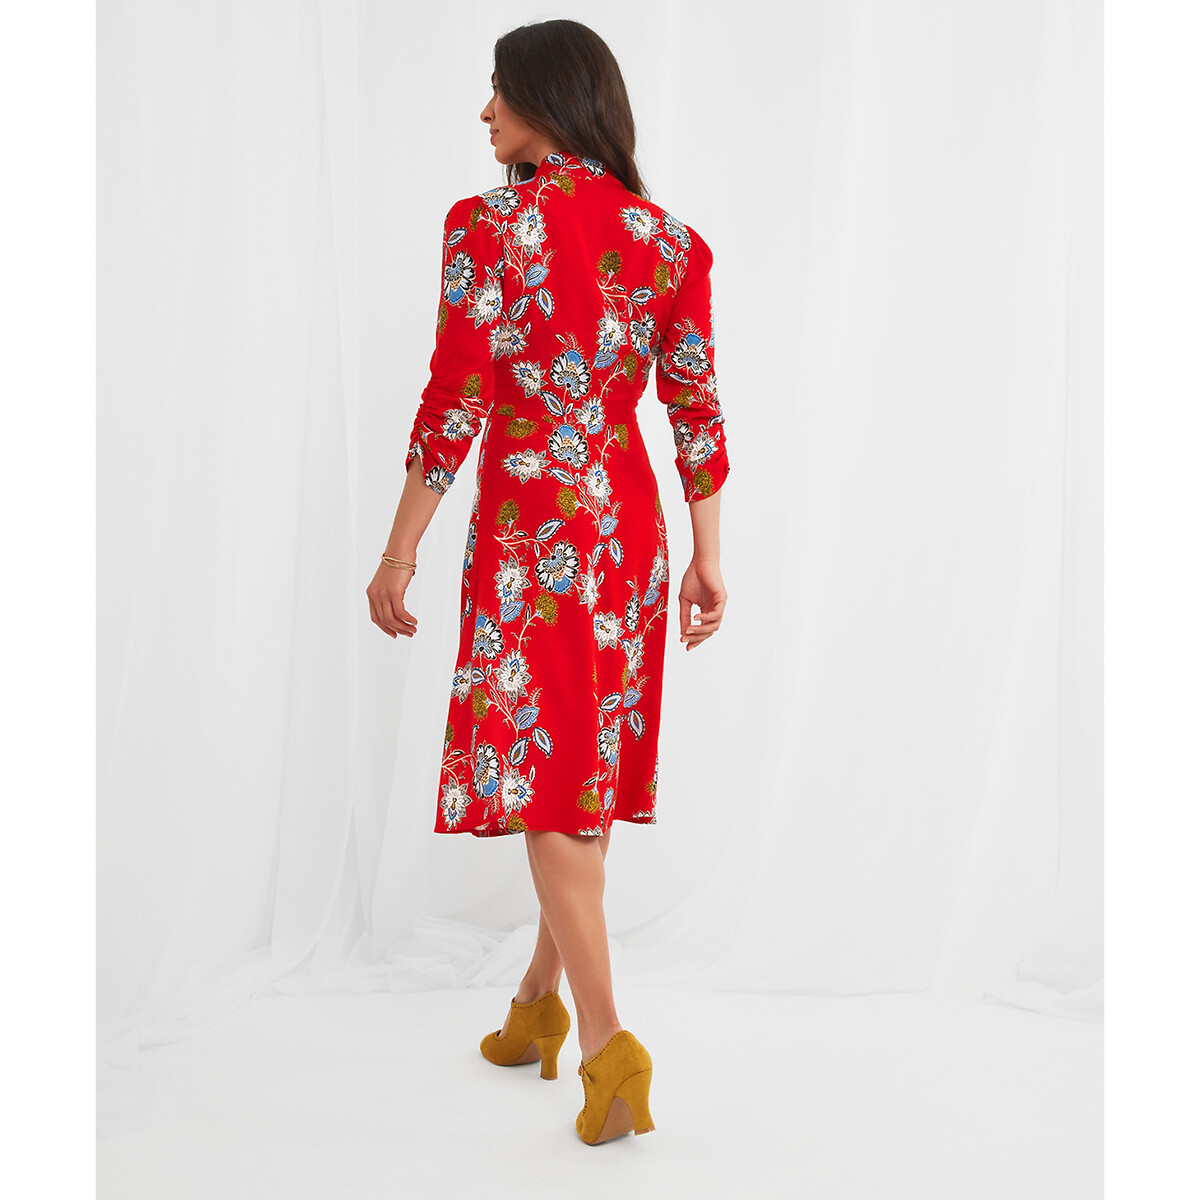 Платье JOE BROWNS Платье С V-образным вырезом цветочный принт 44 красный, размер 44 - фото 3